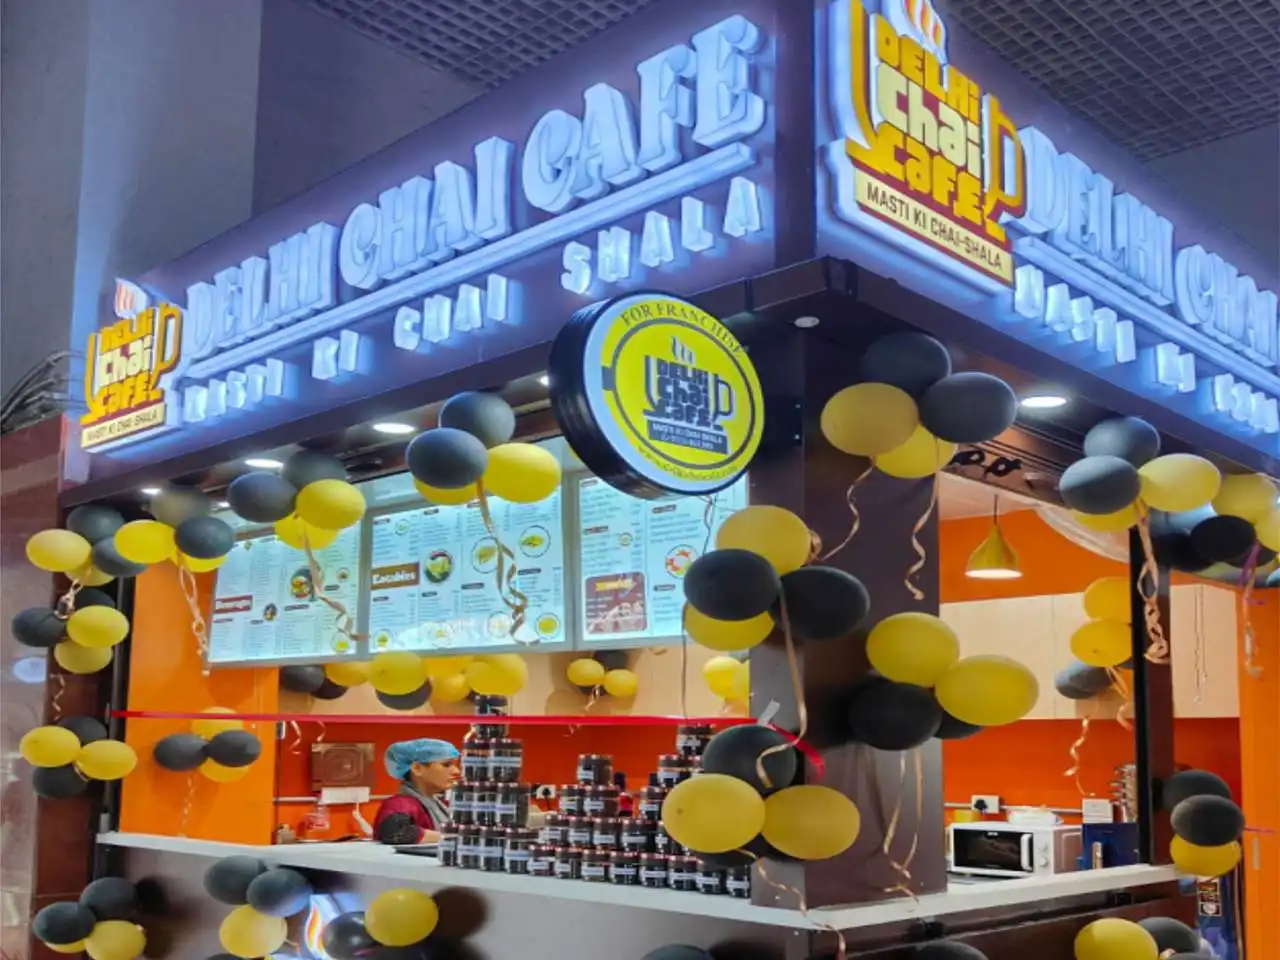 delhi chai cafe franchise New Delhi Railway Station